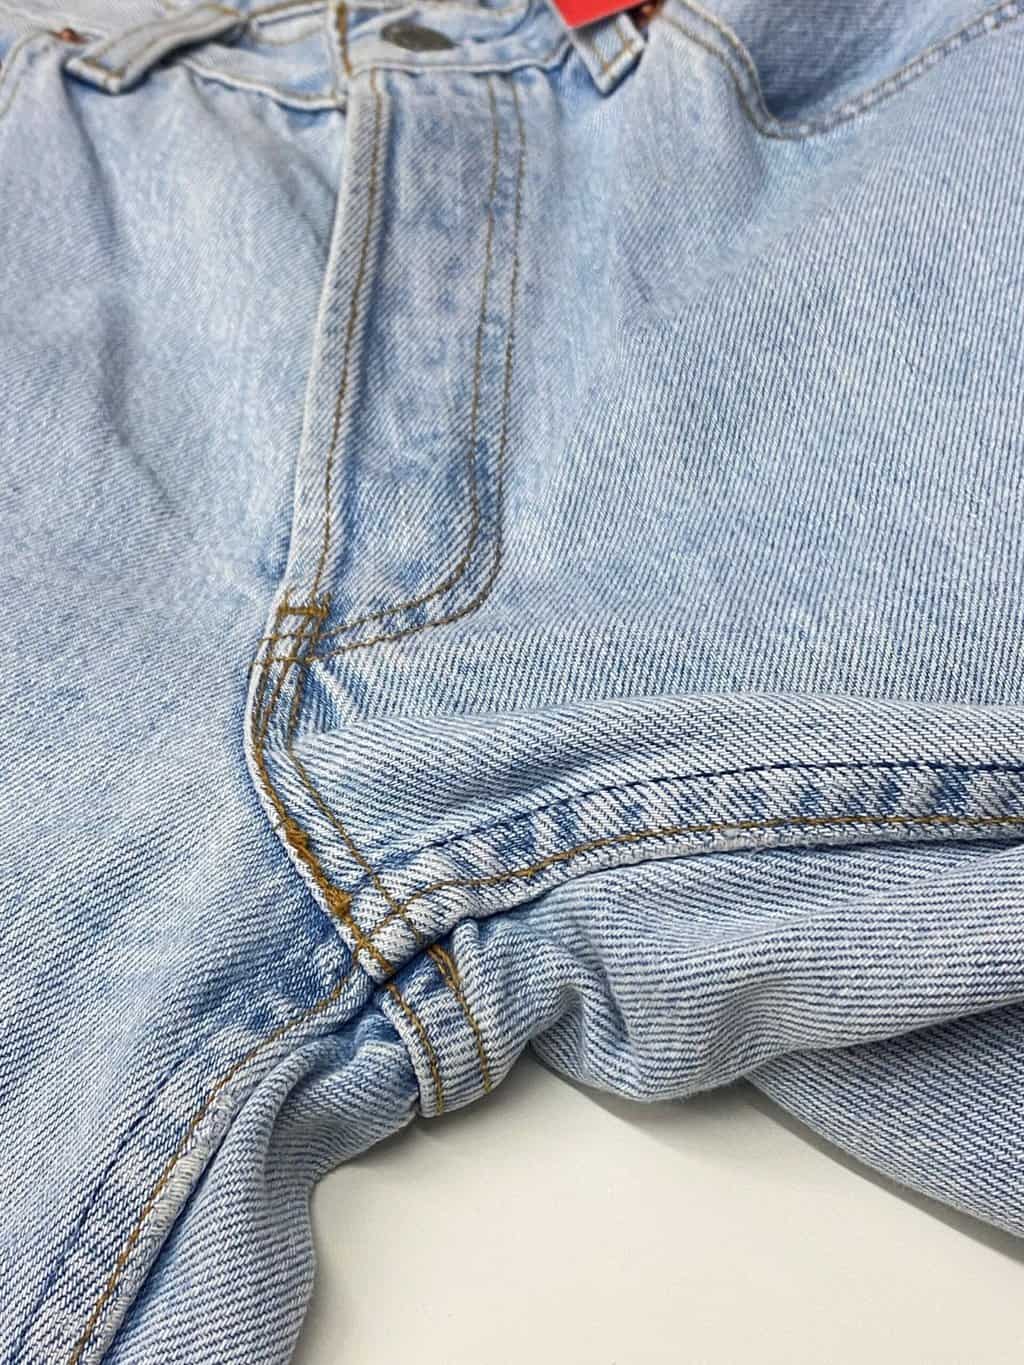 Vintage Levis 901 jeans pale stonewash blue - W26.5 x L32 - St Cyr Vintage